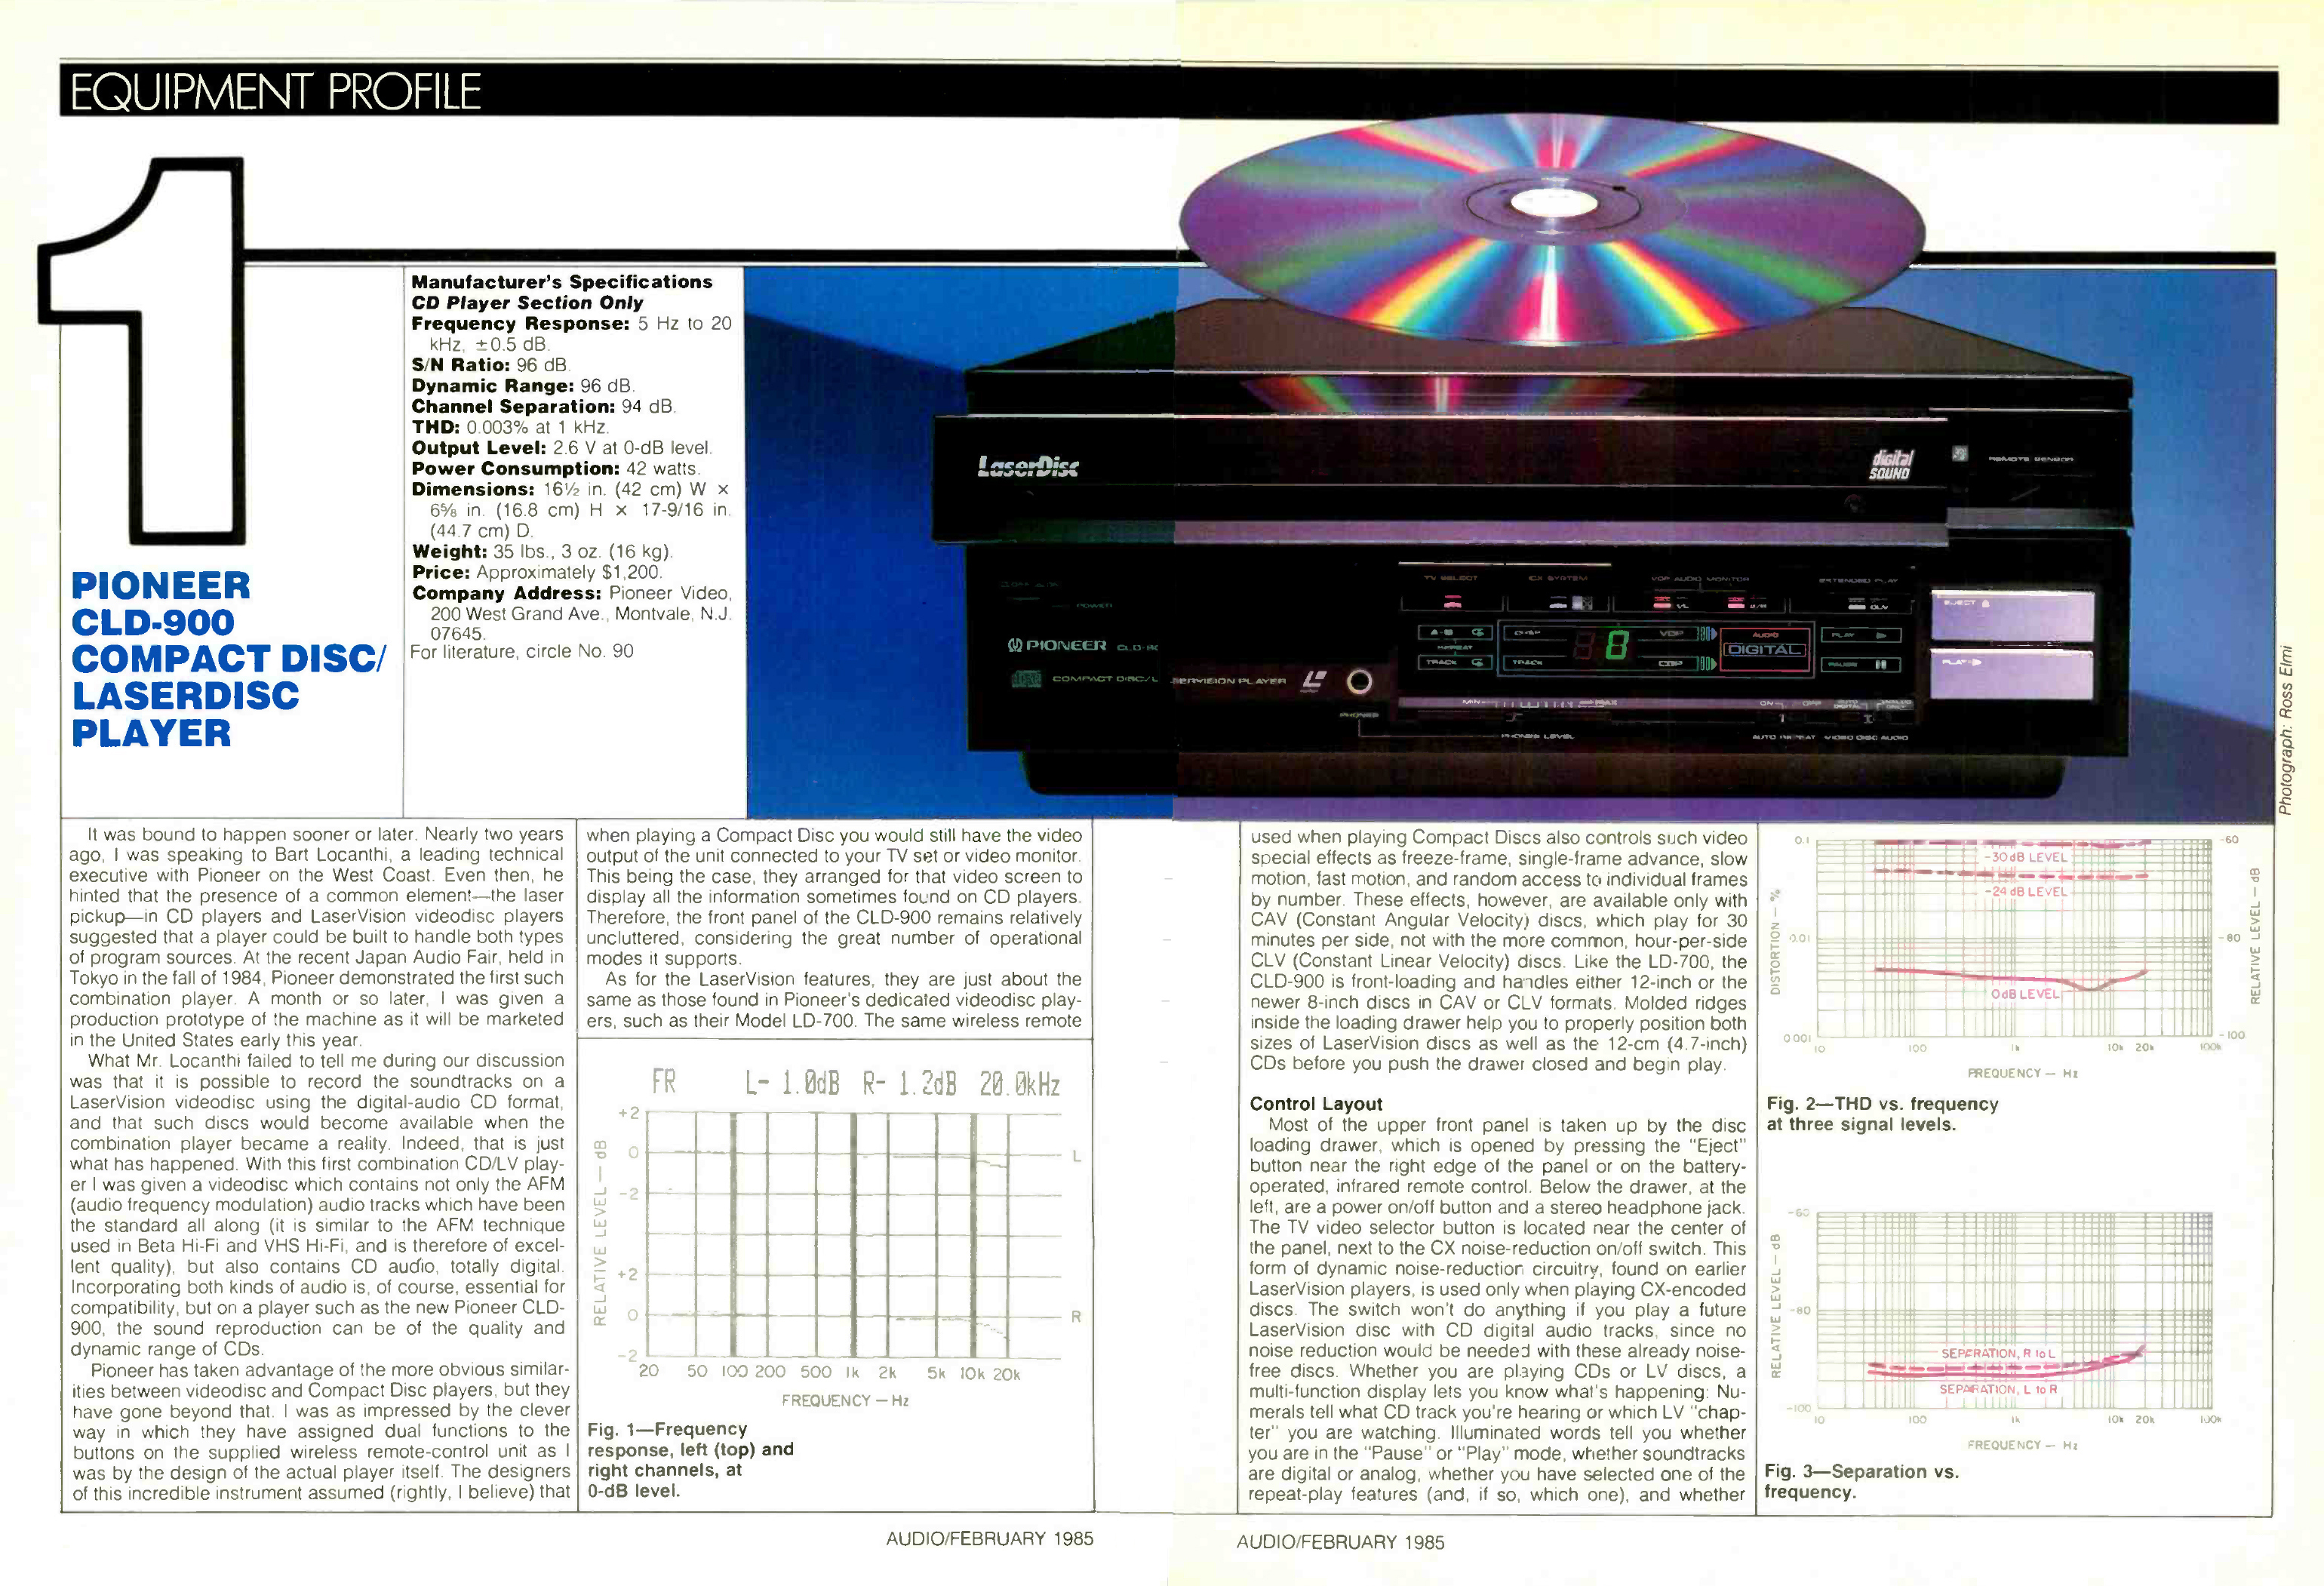 Pioneer CLD-900-Werbung-1985.jpg